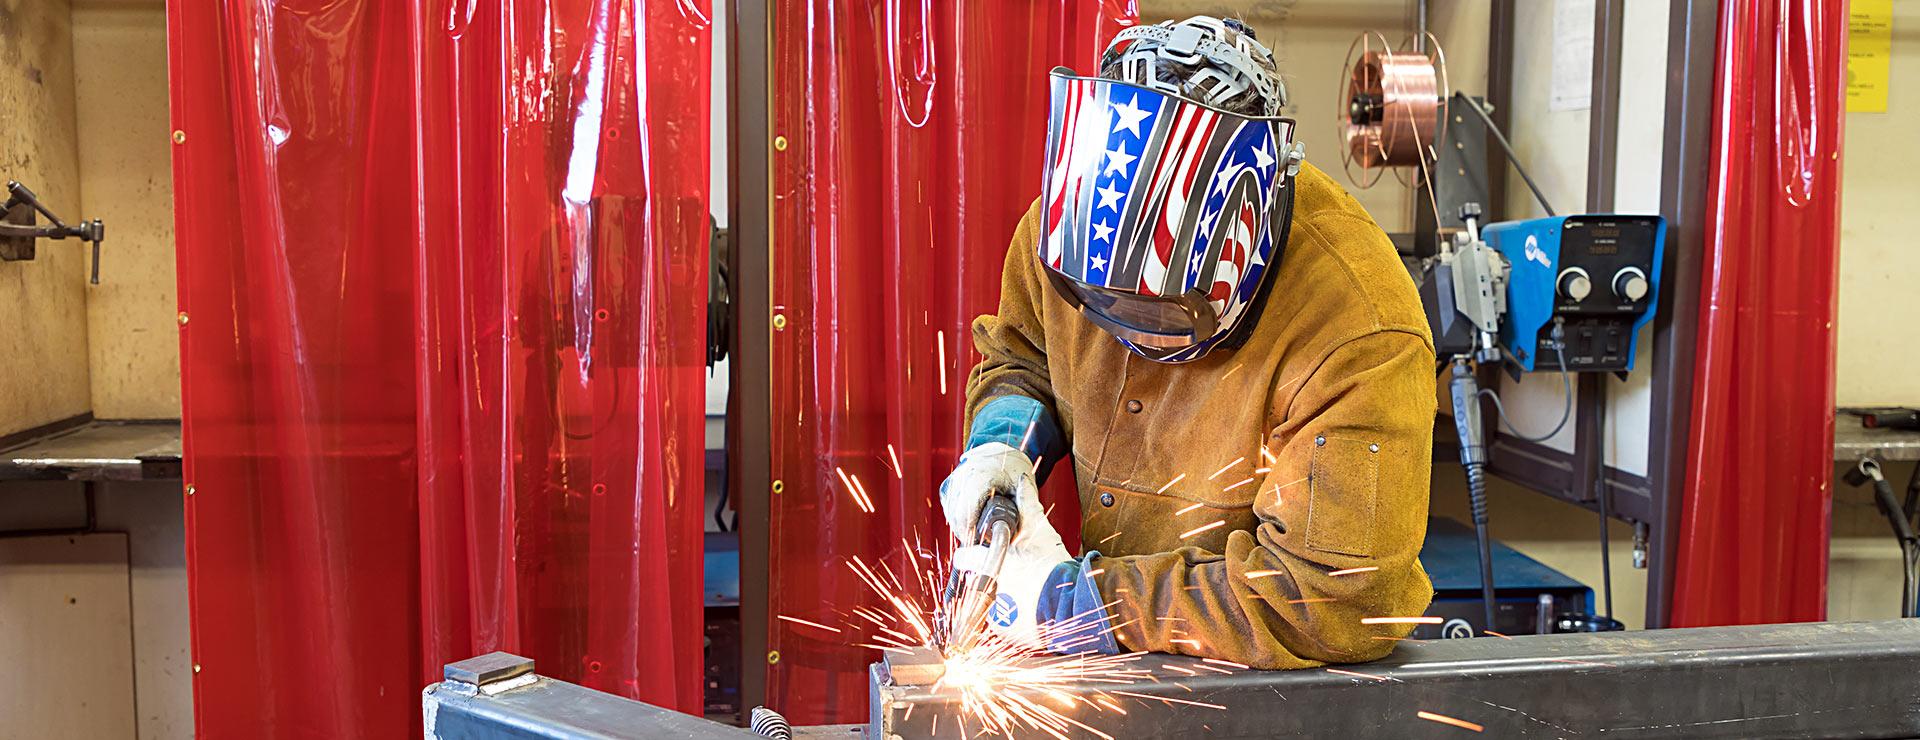 Welding student operating welding equipment